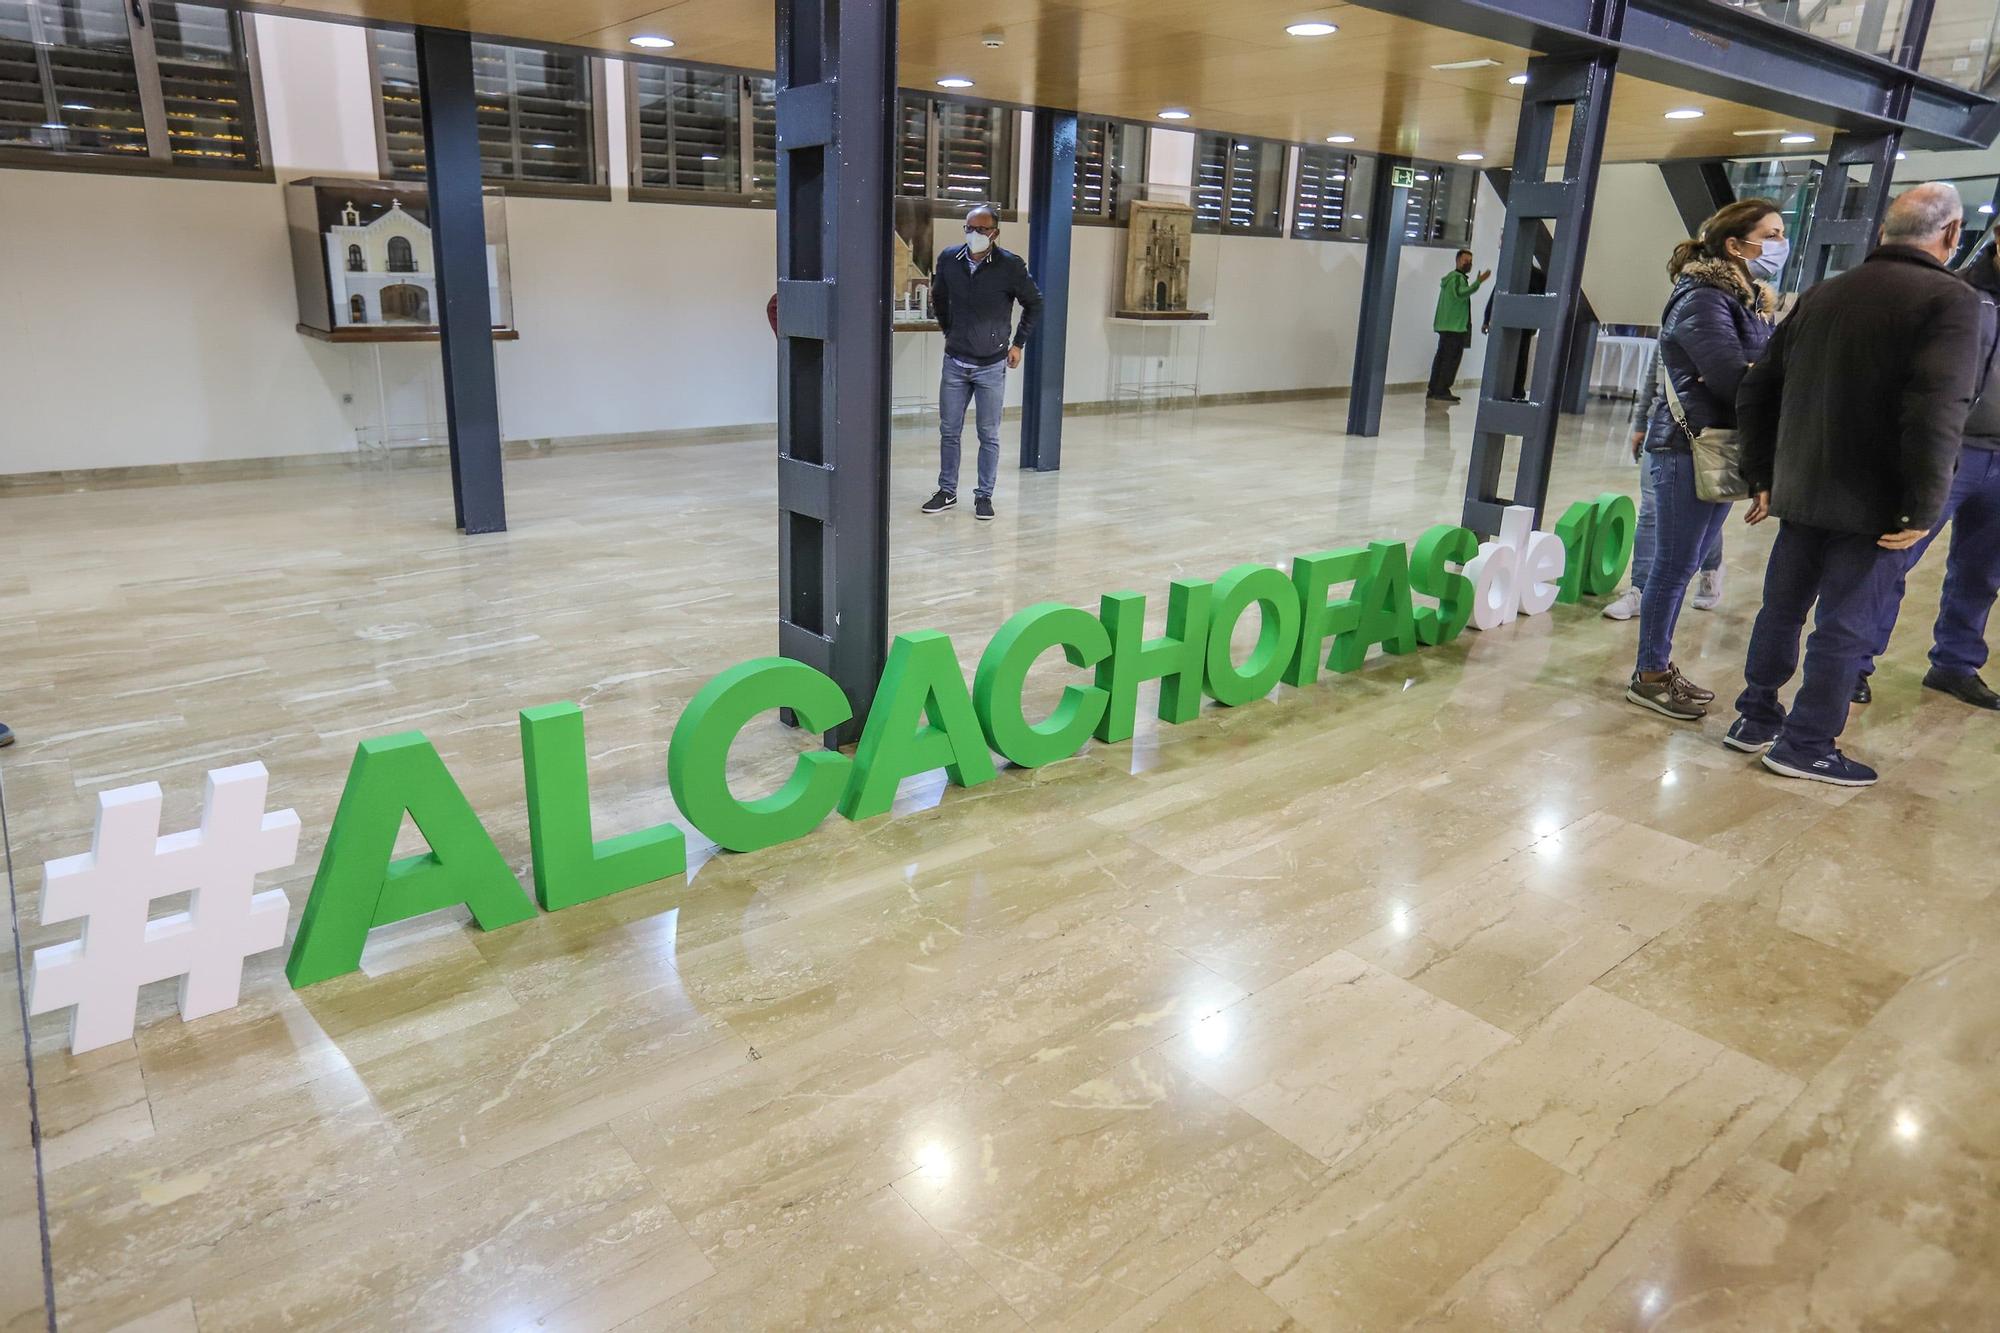 el caso de éxito de la marca Alcachofa Vega Baja